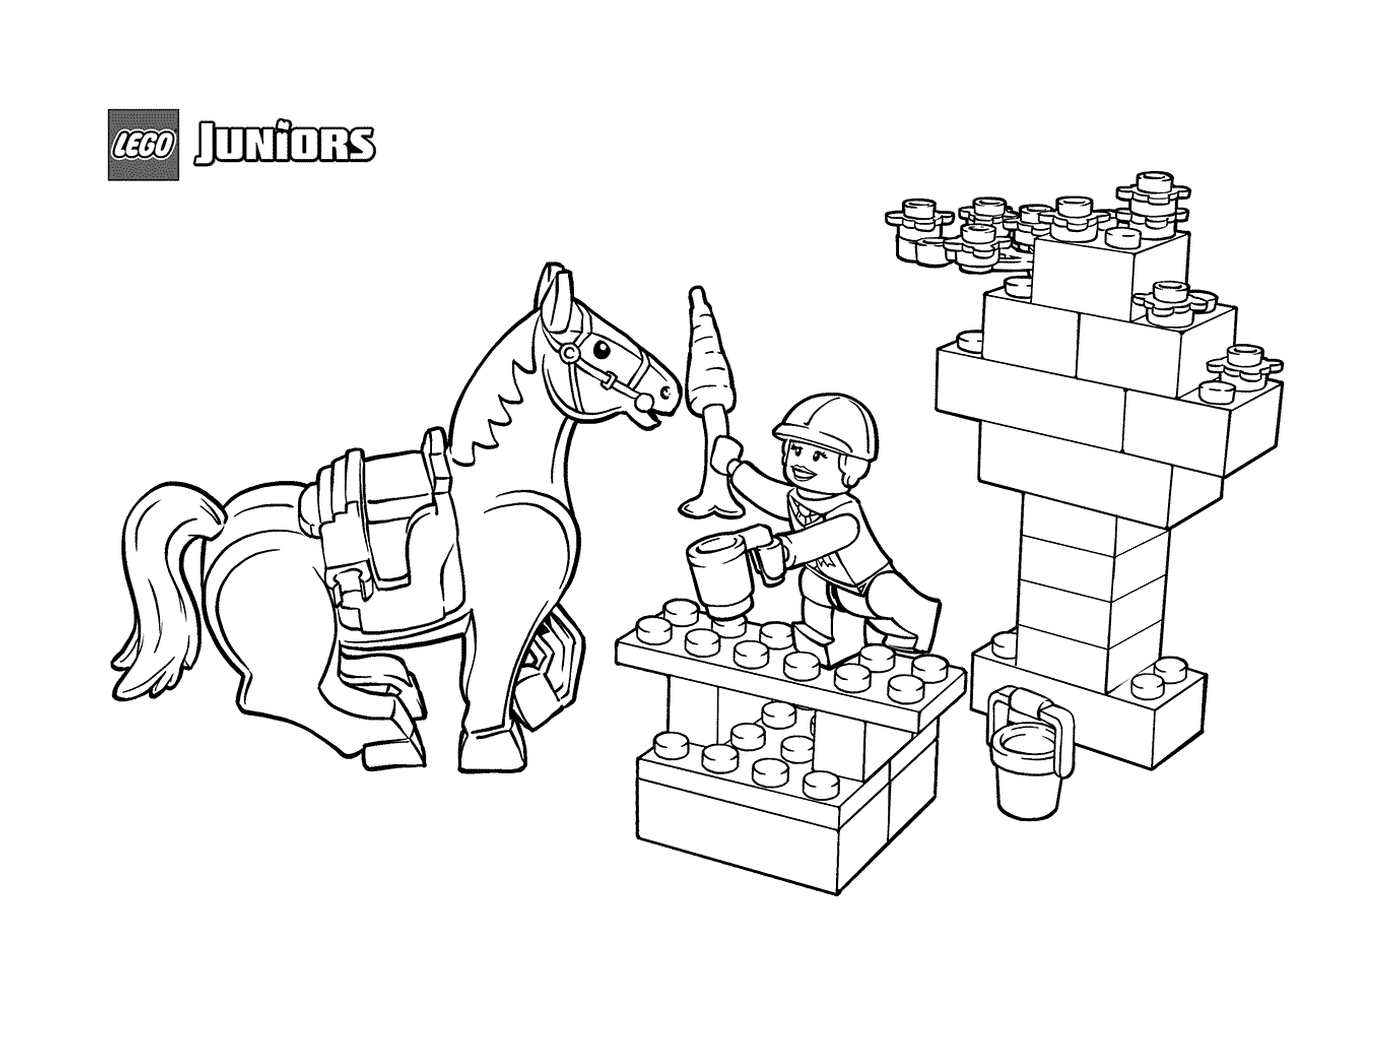  Snack equine em LEGO Junior 